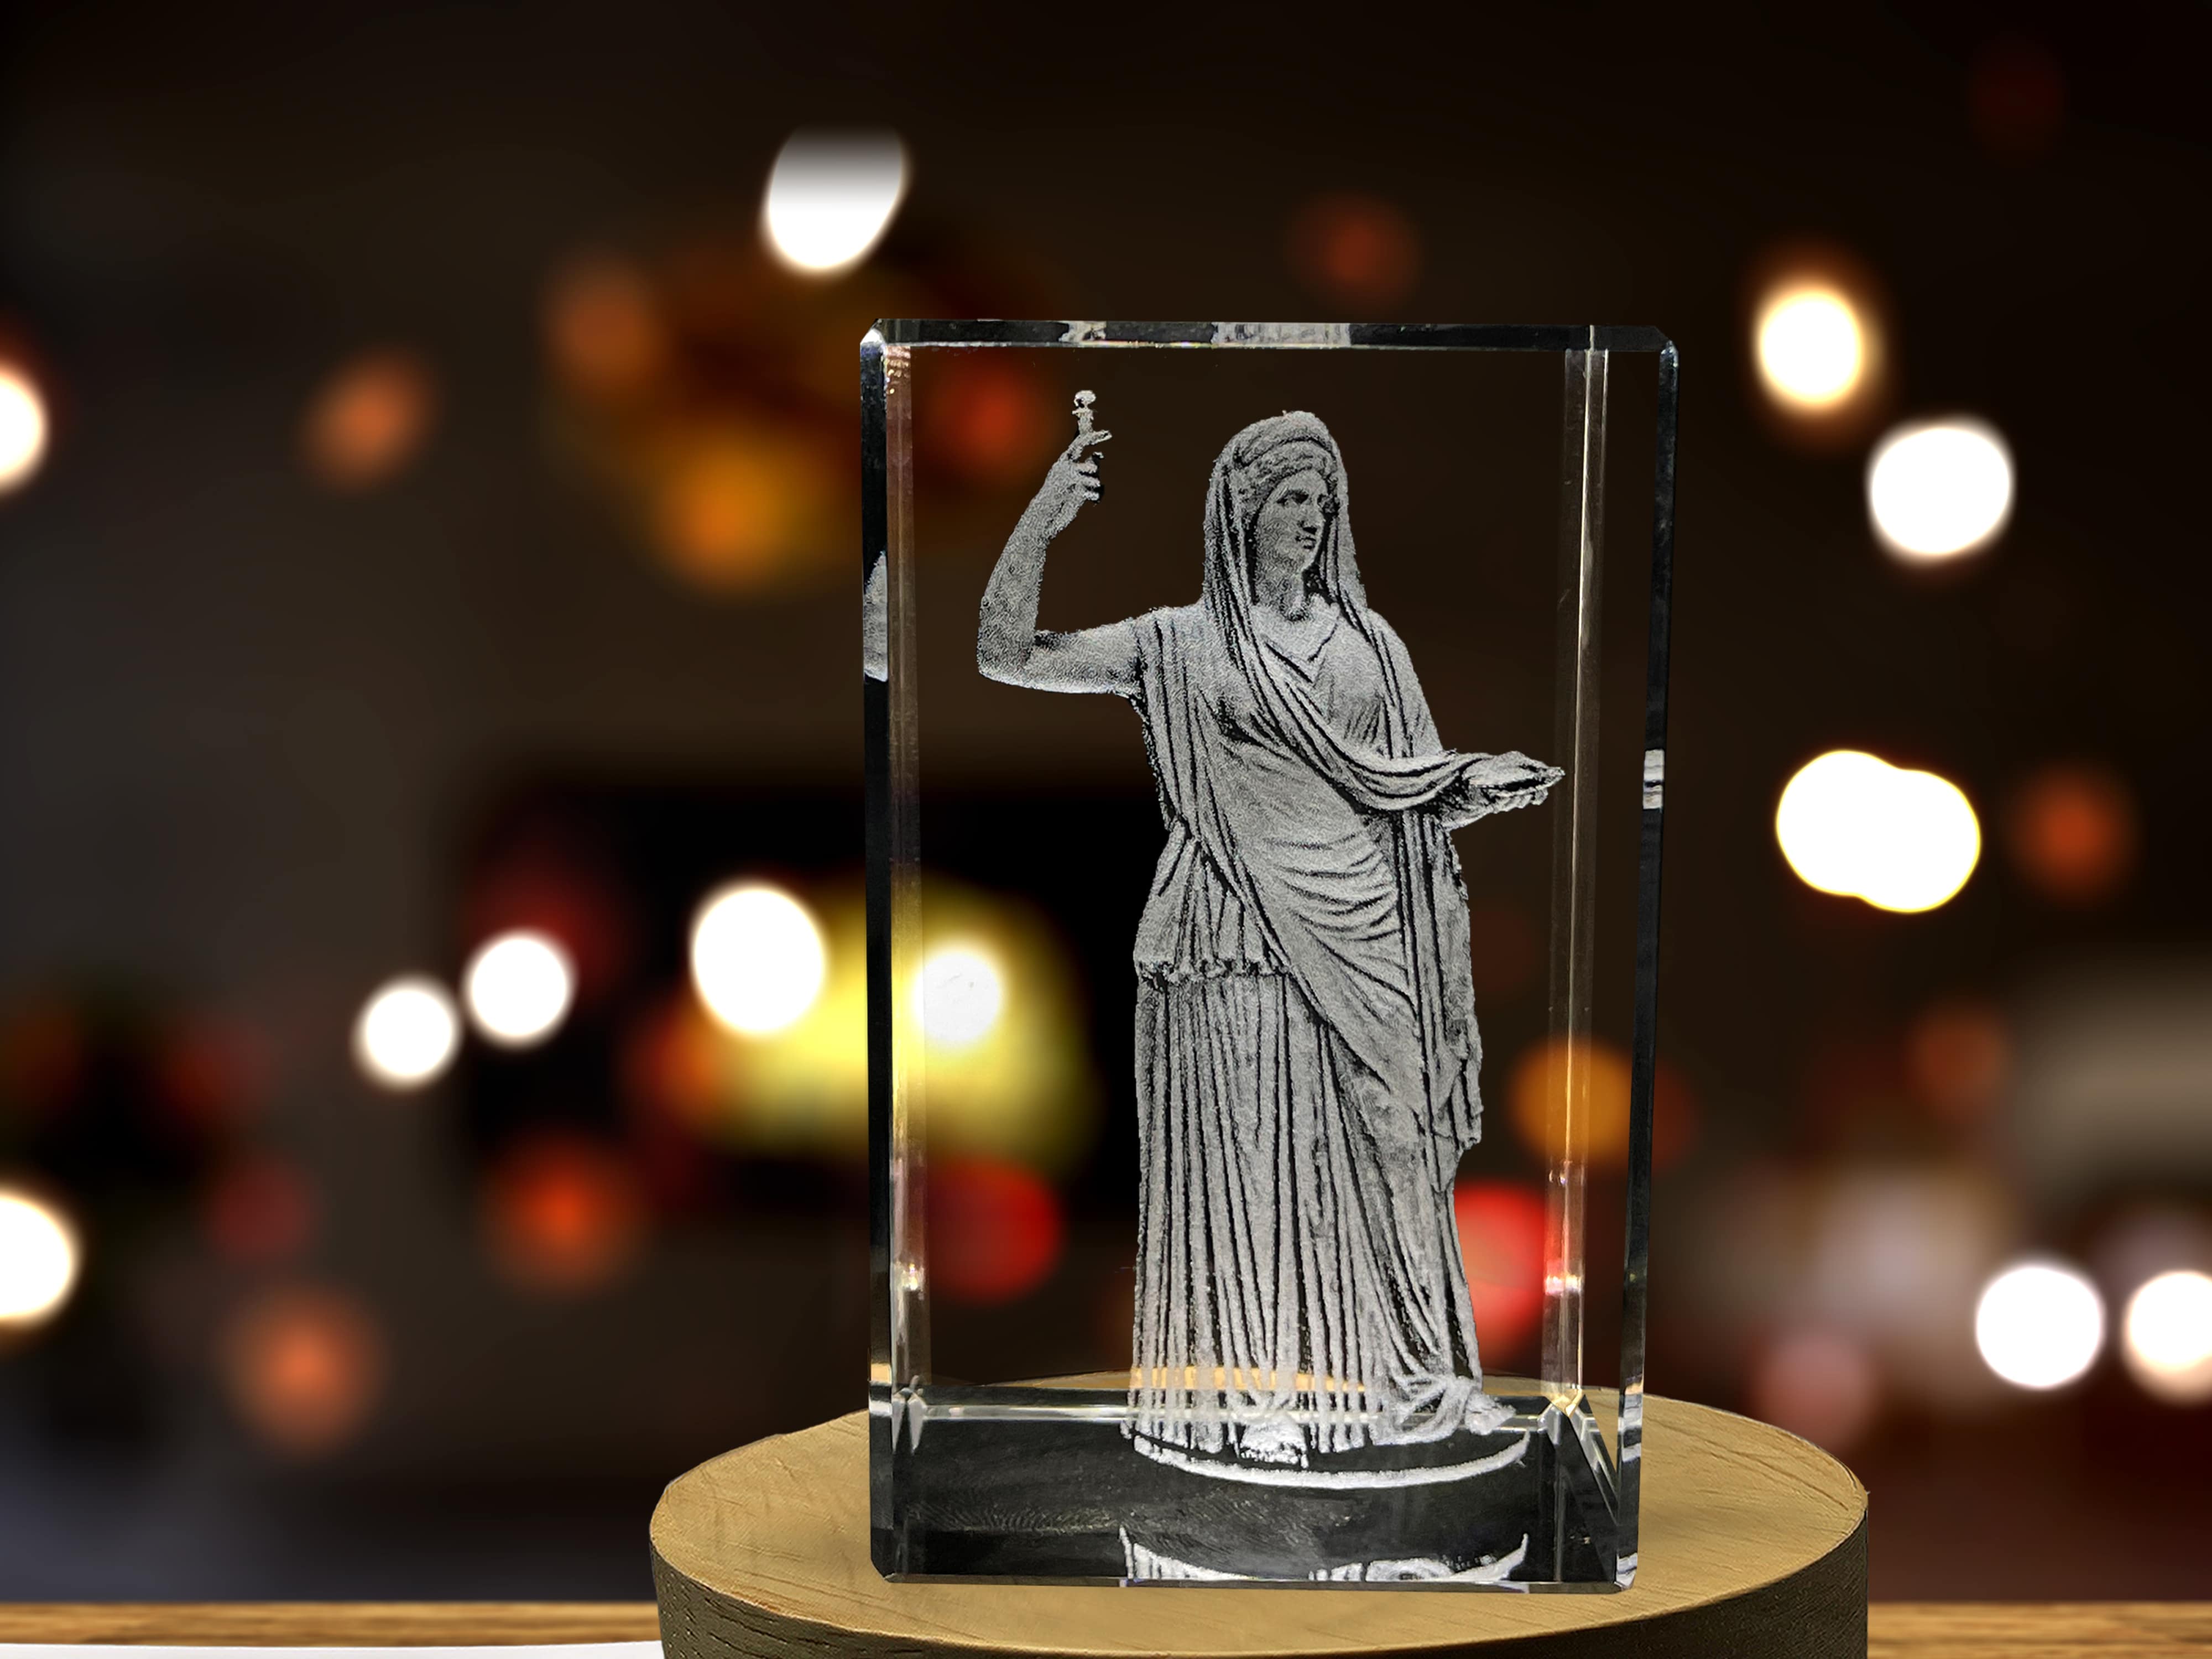 Hera 3D Engraved Crystal Keepsake/Gift/Decor/Collectible/Souvenir A&B Crystal Collection